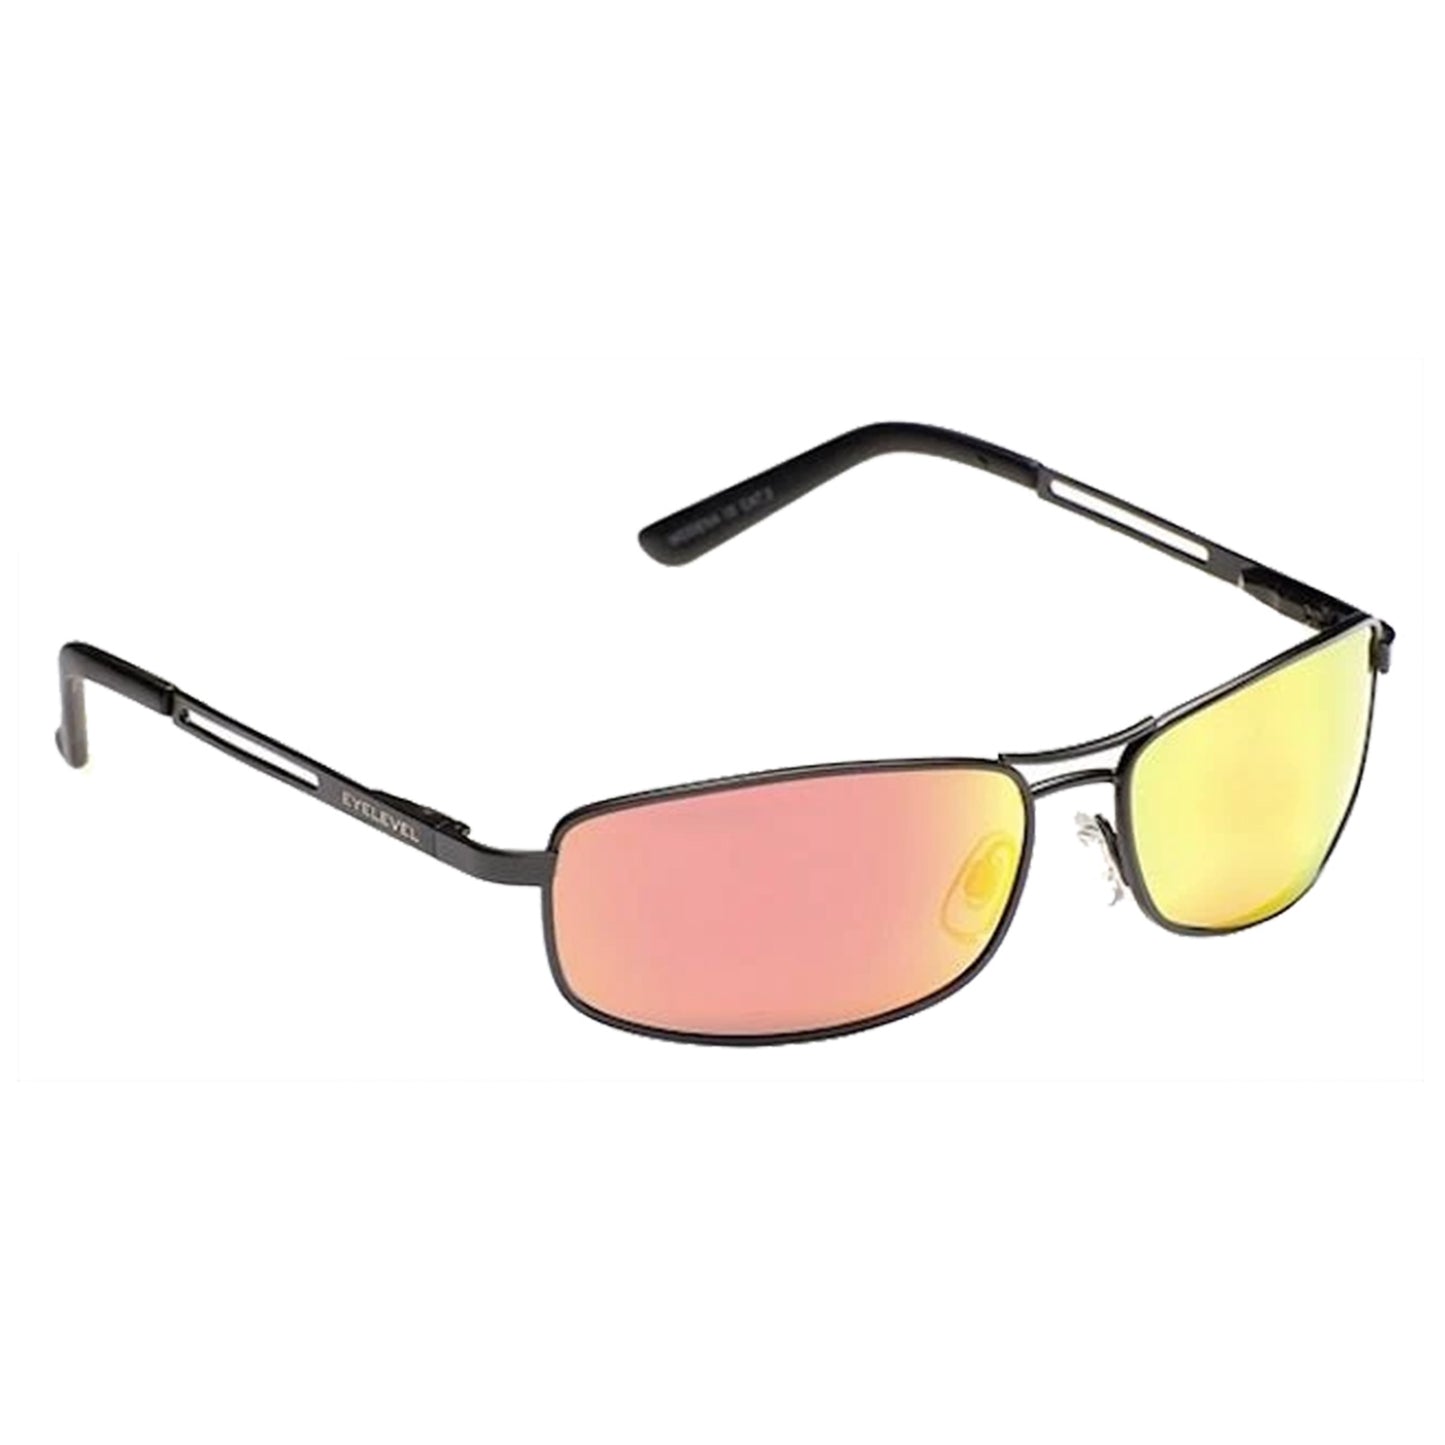 Eyelevel Mens Modena Polarized Sunglasses